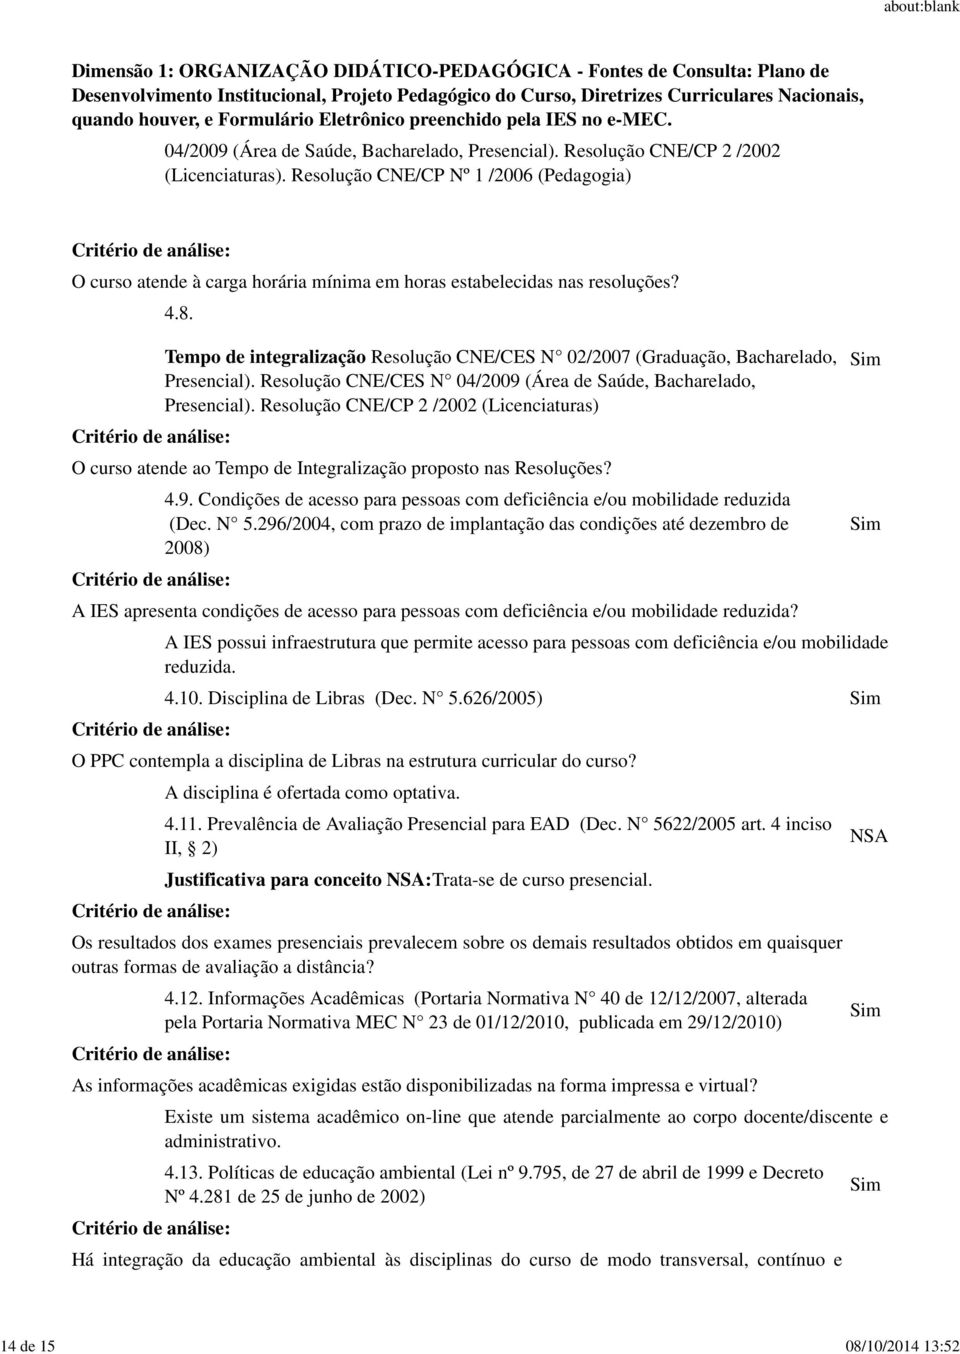 Tempo de integralização Resolução CNE/CES N 02/2007 (Graduação, Bacharelado, Presencial). Resolução CNE/CES N 04/2009 (Área de Saúde, Bacharelado, Presencial).